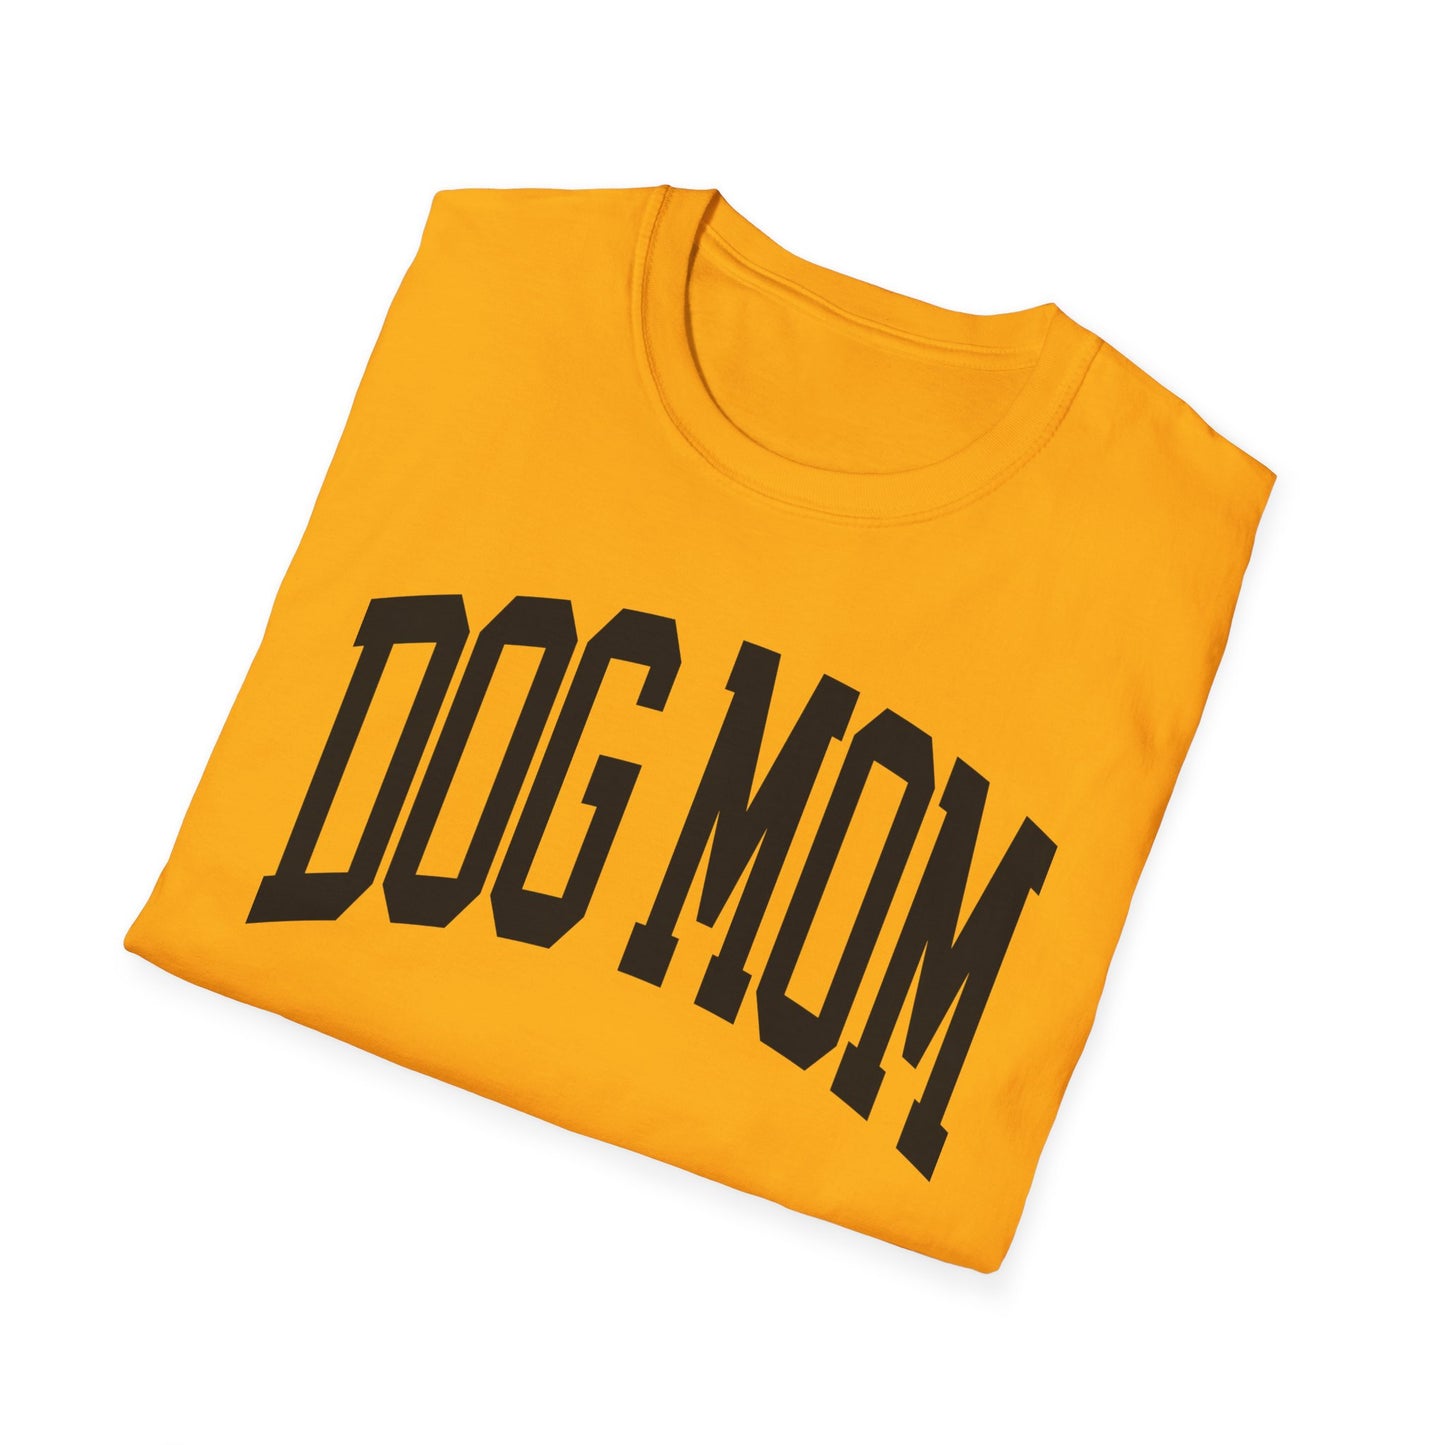 DOG MOM UNIVERSITY - Unisex Softstyle T-Shirt